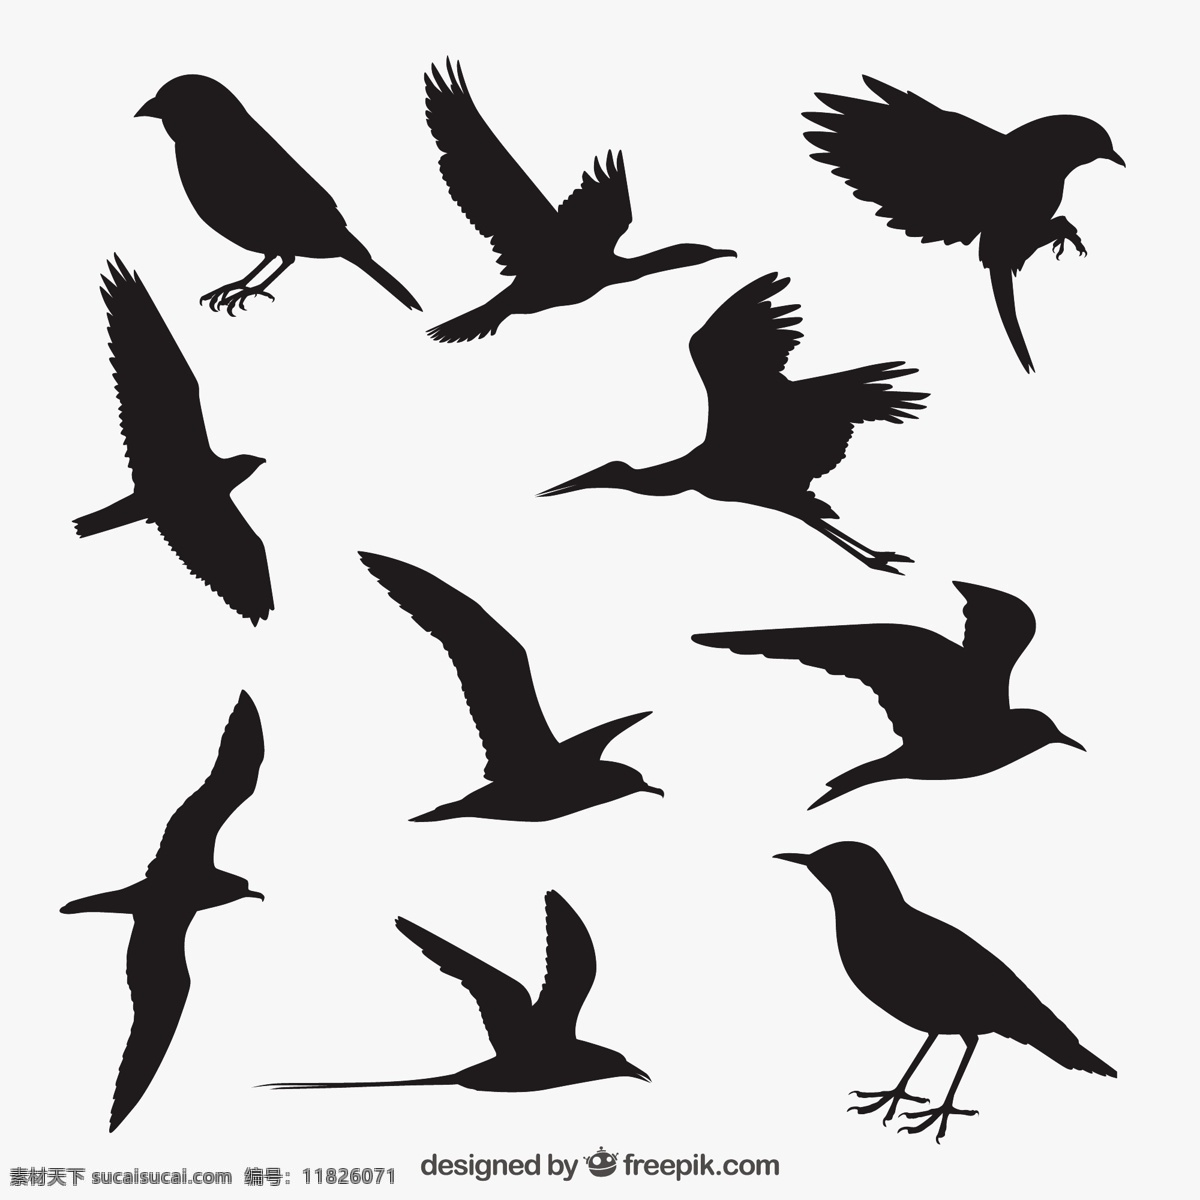 鸟剪影 自然 动物 翅膀 羽毛 丛林 黑色 动物园 剪影 海鸥 野生 野生动物 麻雀 大纲